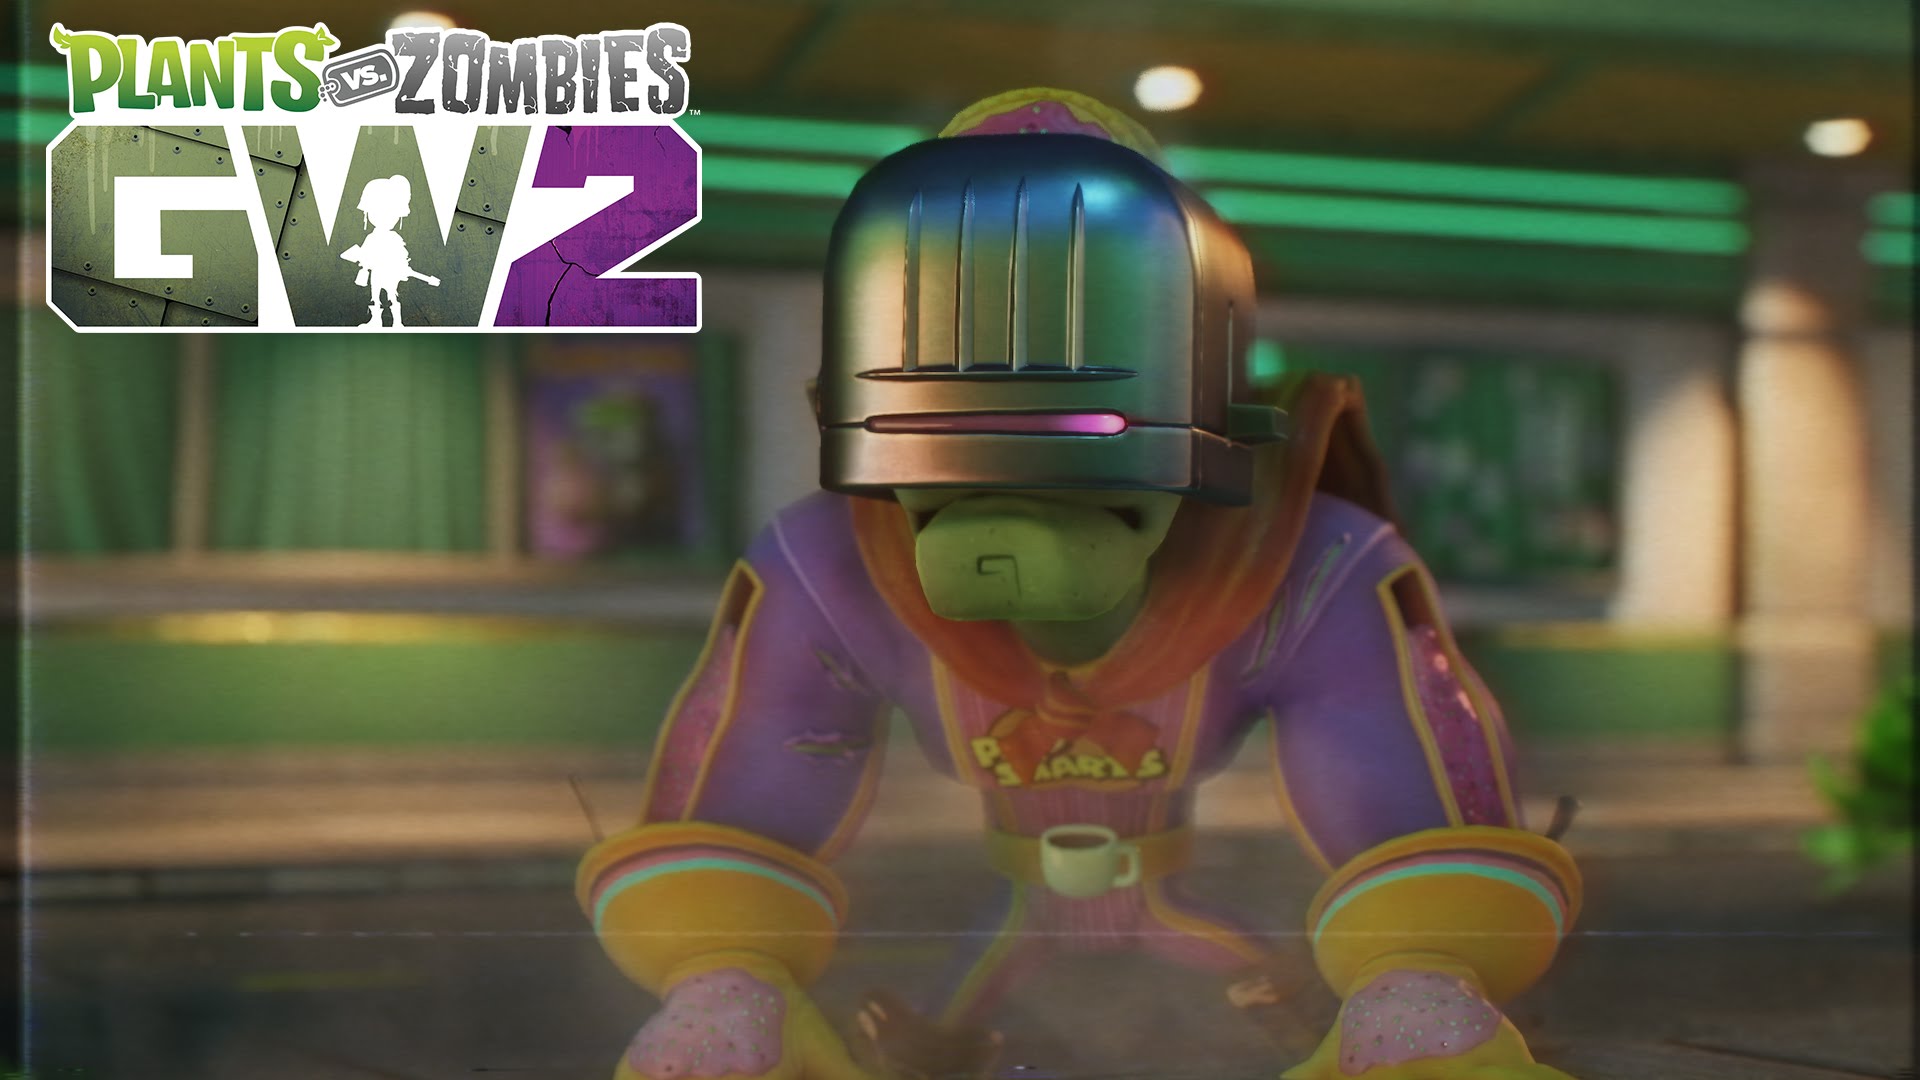 Title: Trouble in Zombopolis Trailer| Plants vs. Zombies Garden Warfare 2